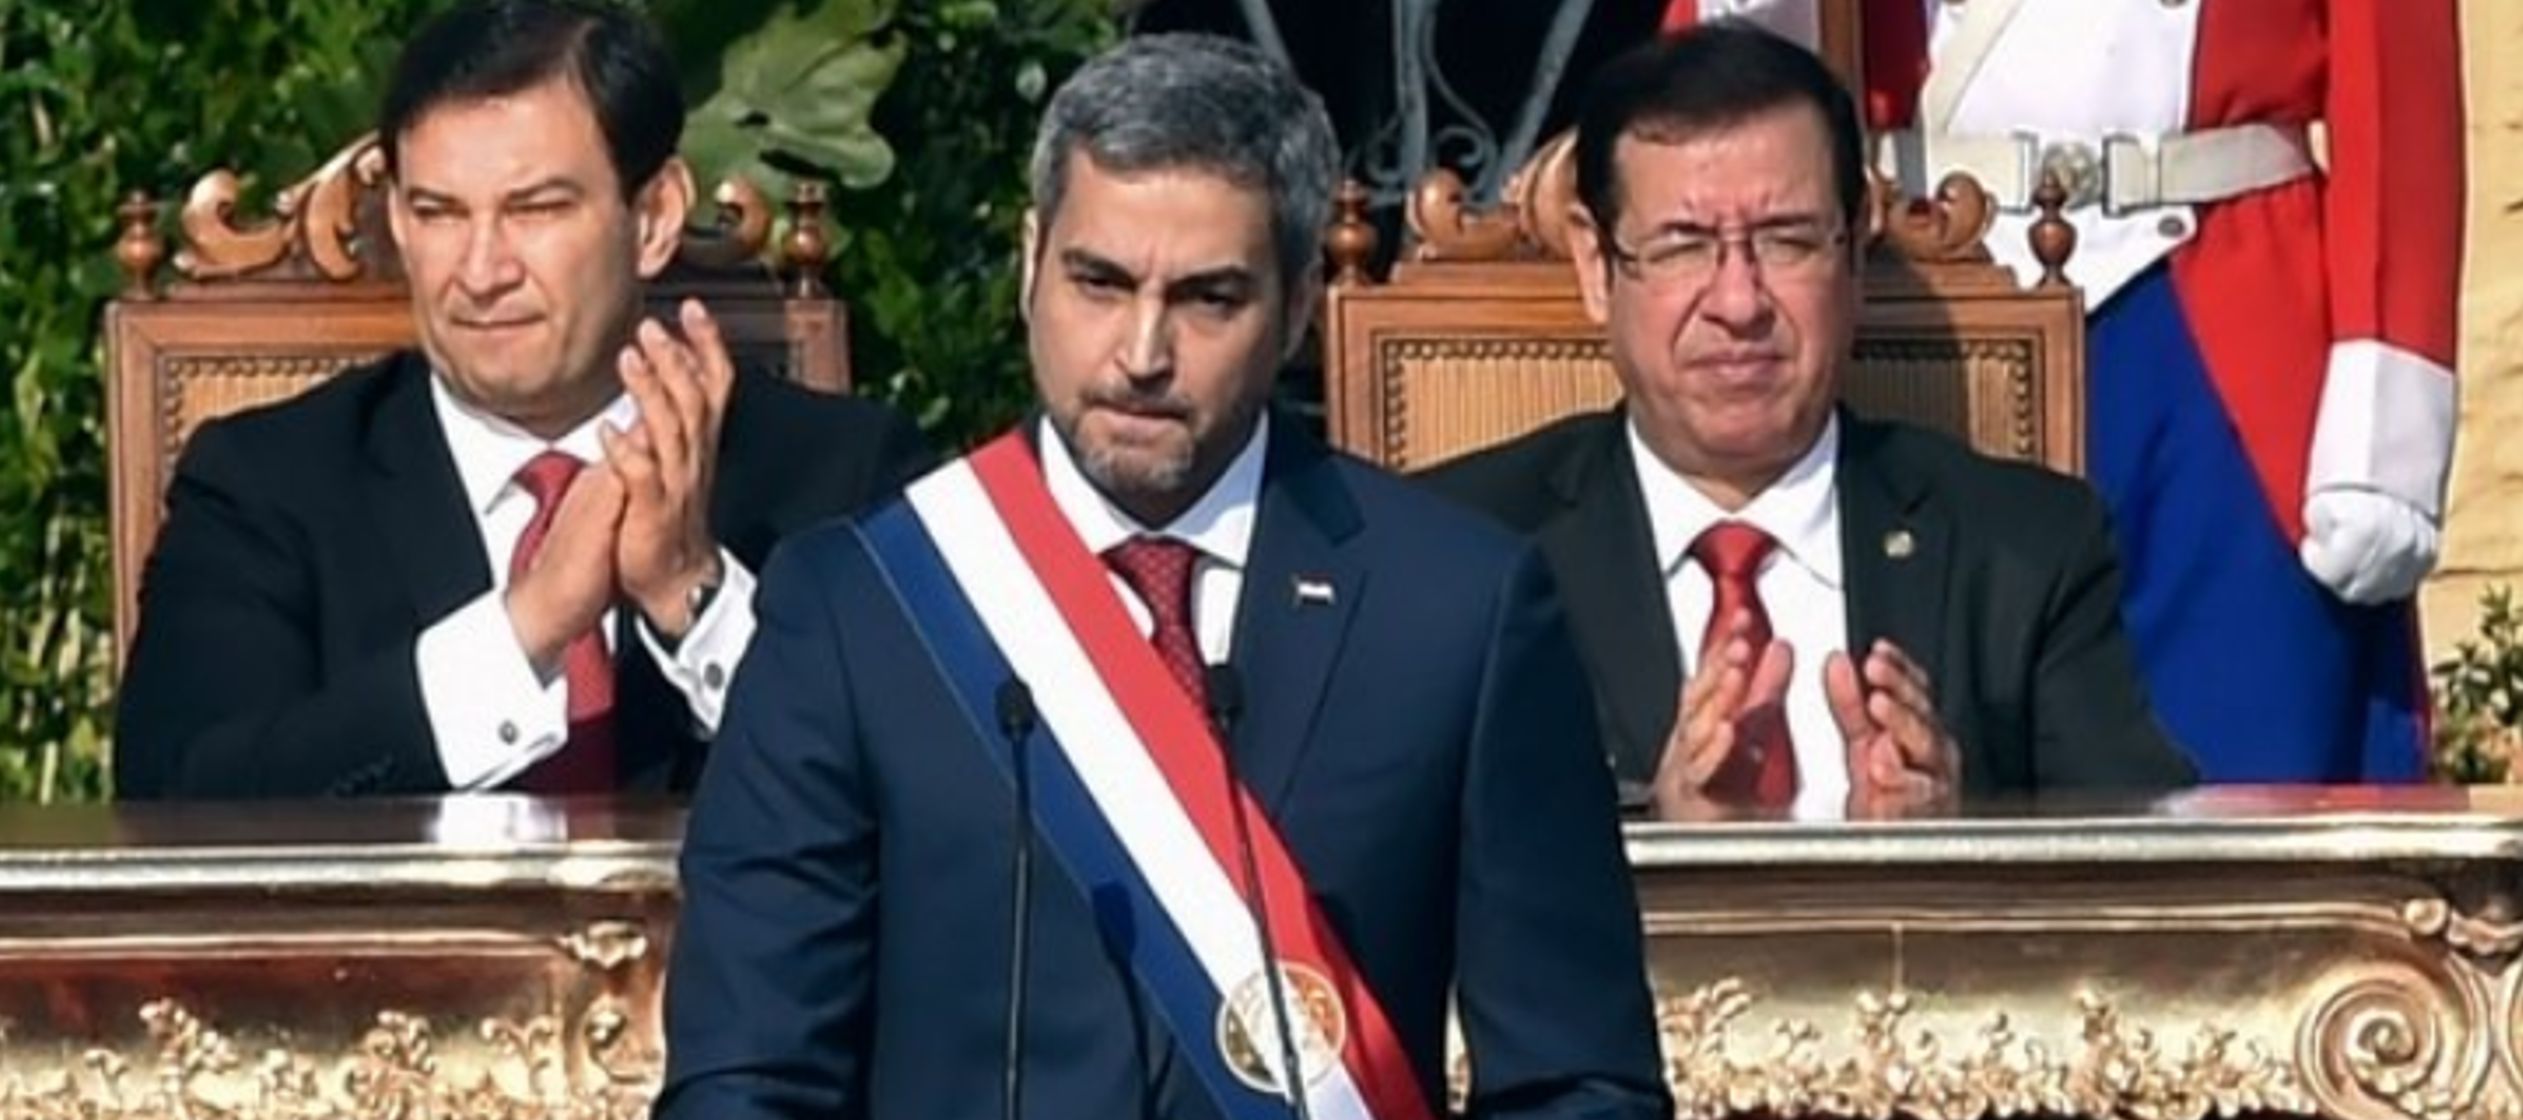 Fue tras la ceremonia de investidura del presidente paraguayo, motivo por el cual Duque...